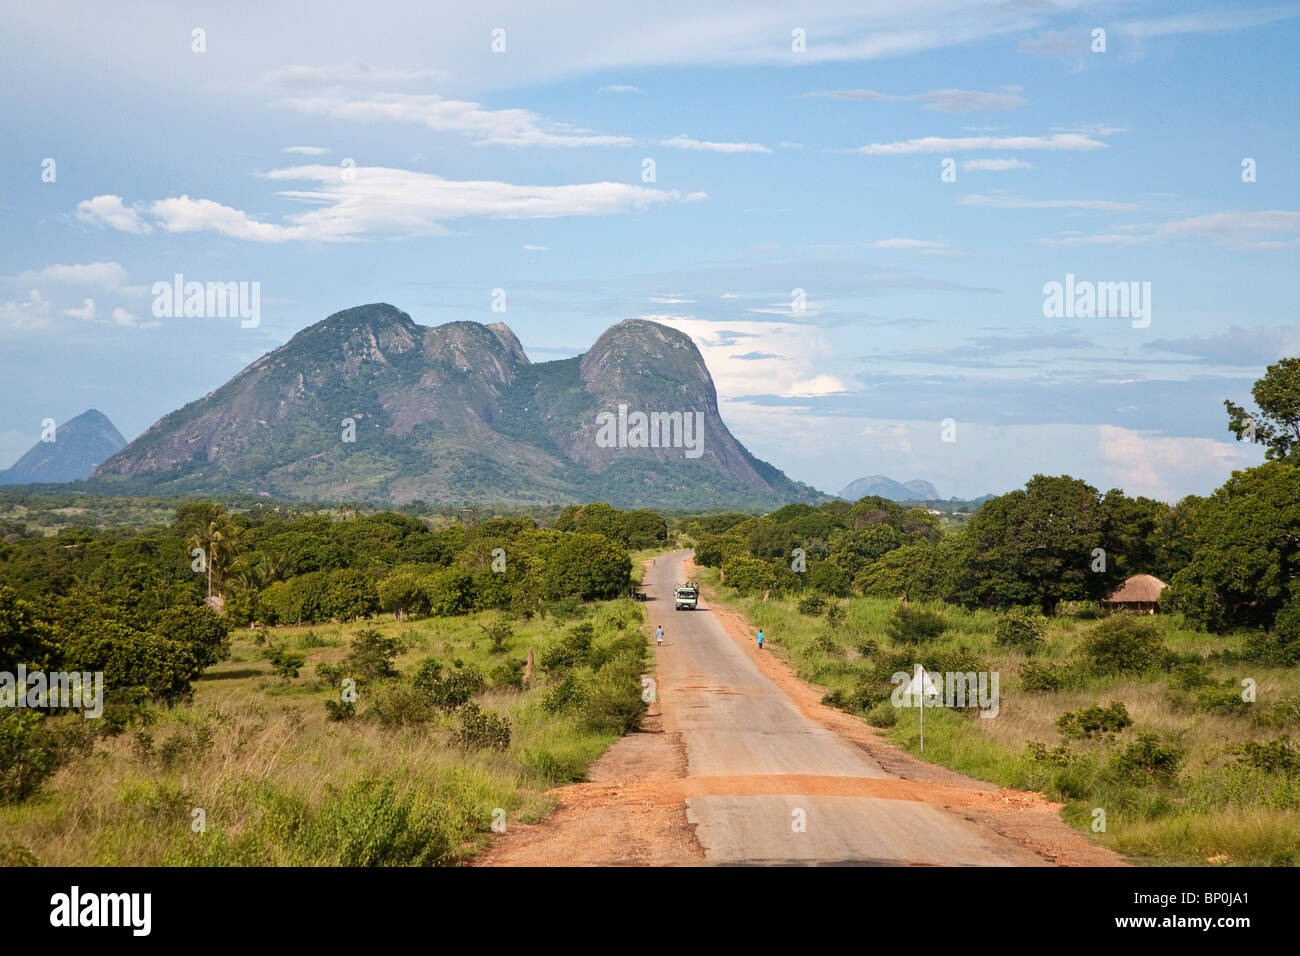 Mozambico, nei pressi di Nampula. La lunga e pot-forata di strada in direzione di Nampula. Foto Stock